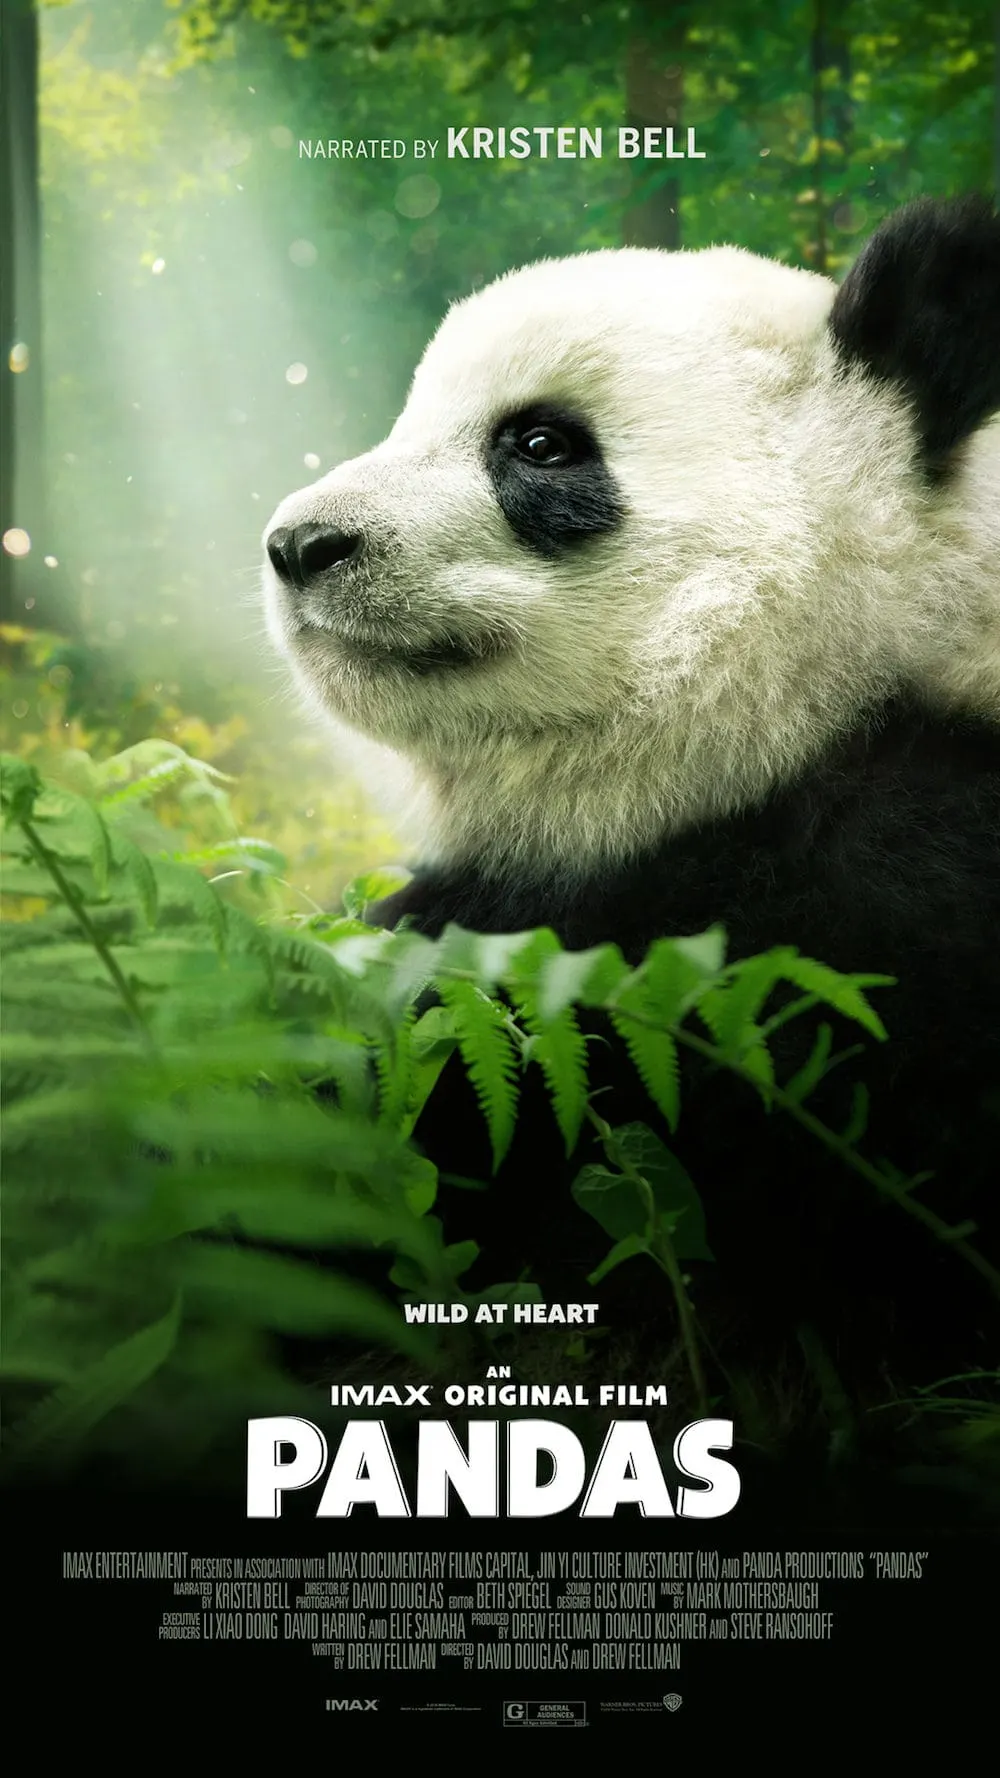 IMAX PANDAS movie poster.